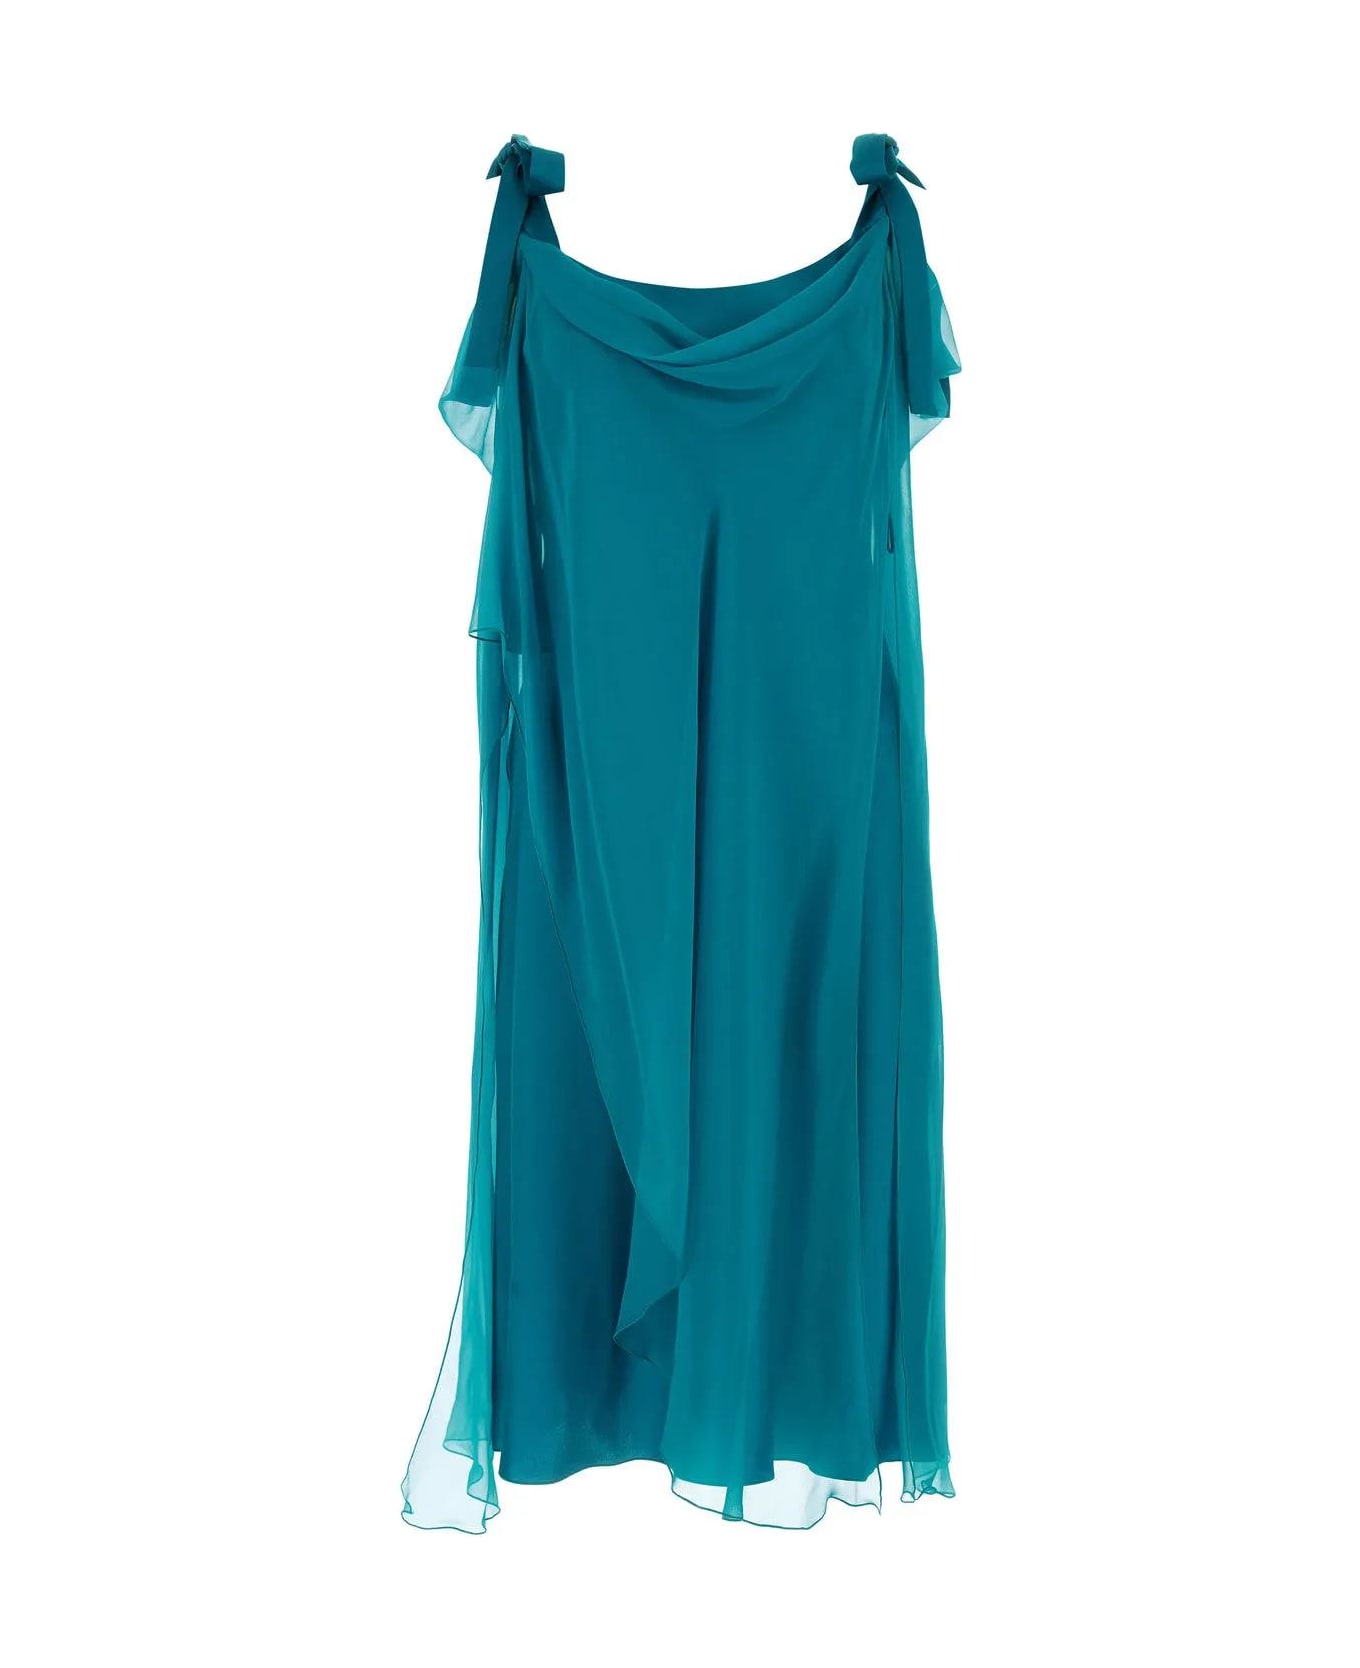 Alberta Ferretti Teal Green Silk Dress - Blue